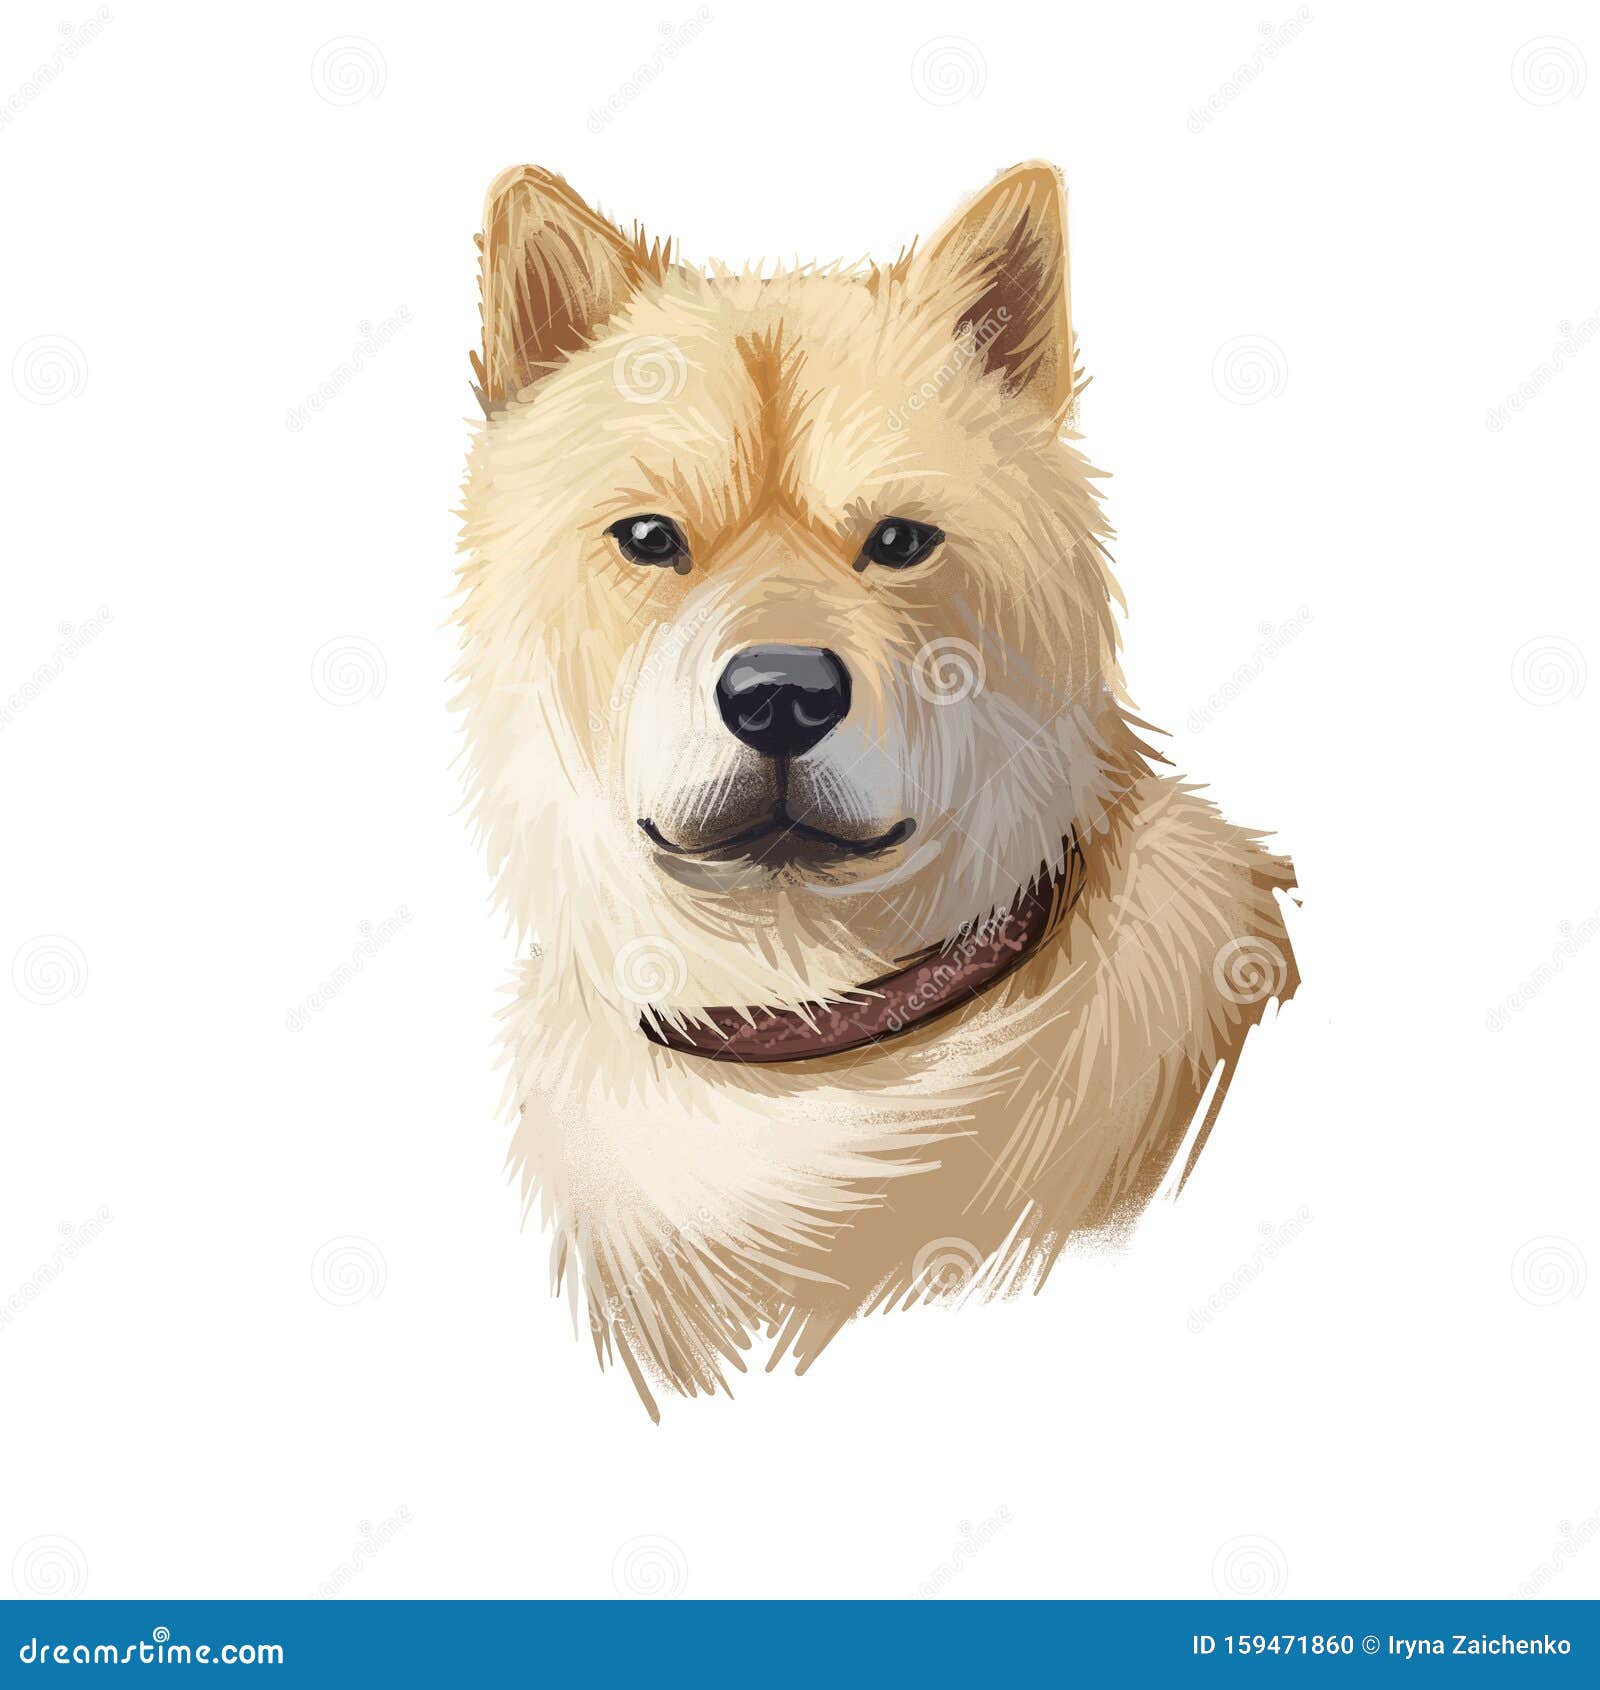 hokkaido, do-ken, ainu-ken, seta, ainu dog, hokkaido-ken dog digital art   on white background. japan origin